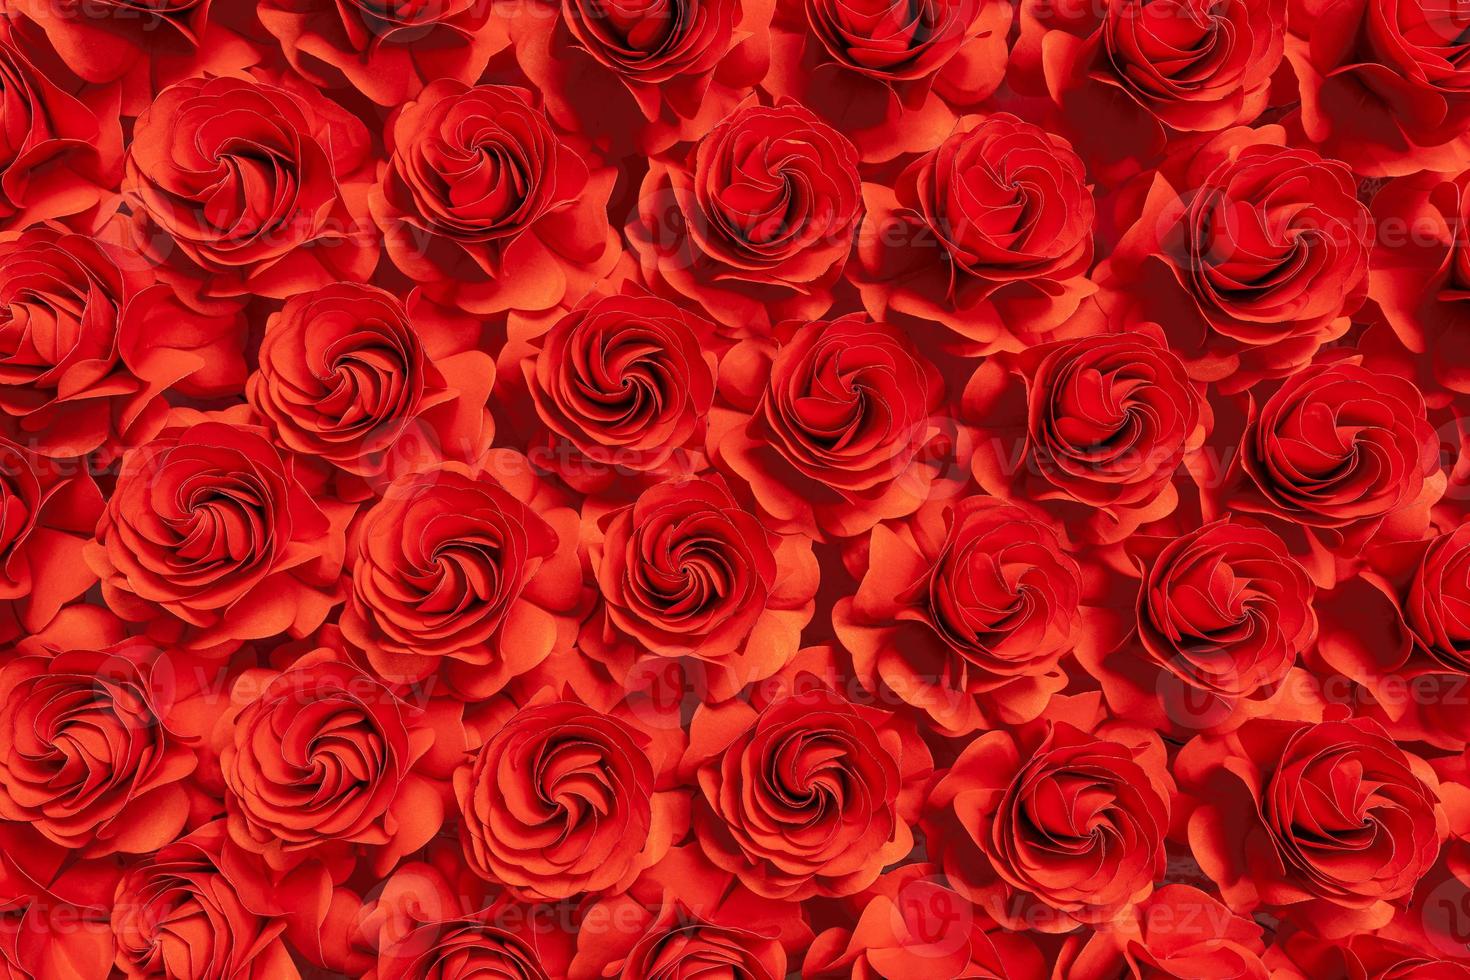 fleur en papier, roses rouges découpées dans du papier, décorations de mariage, fond abstrait fleur photo